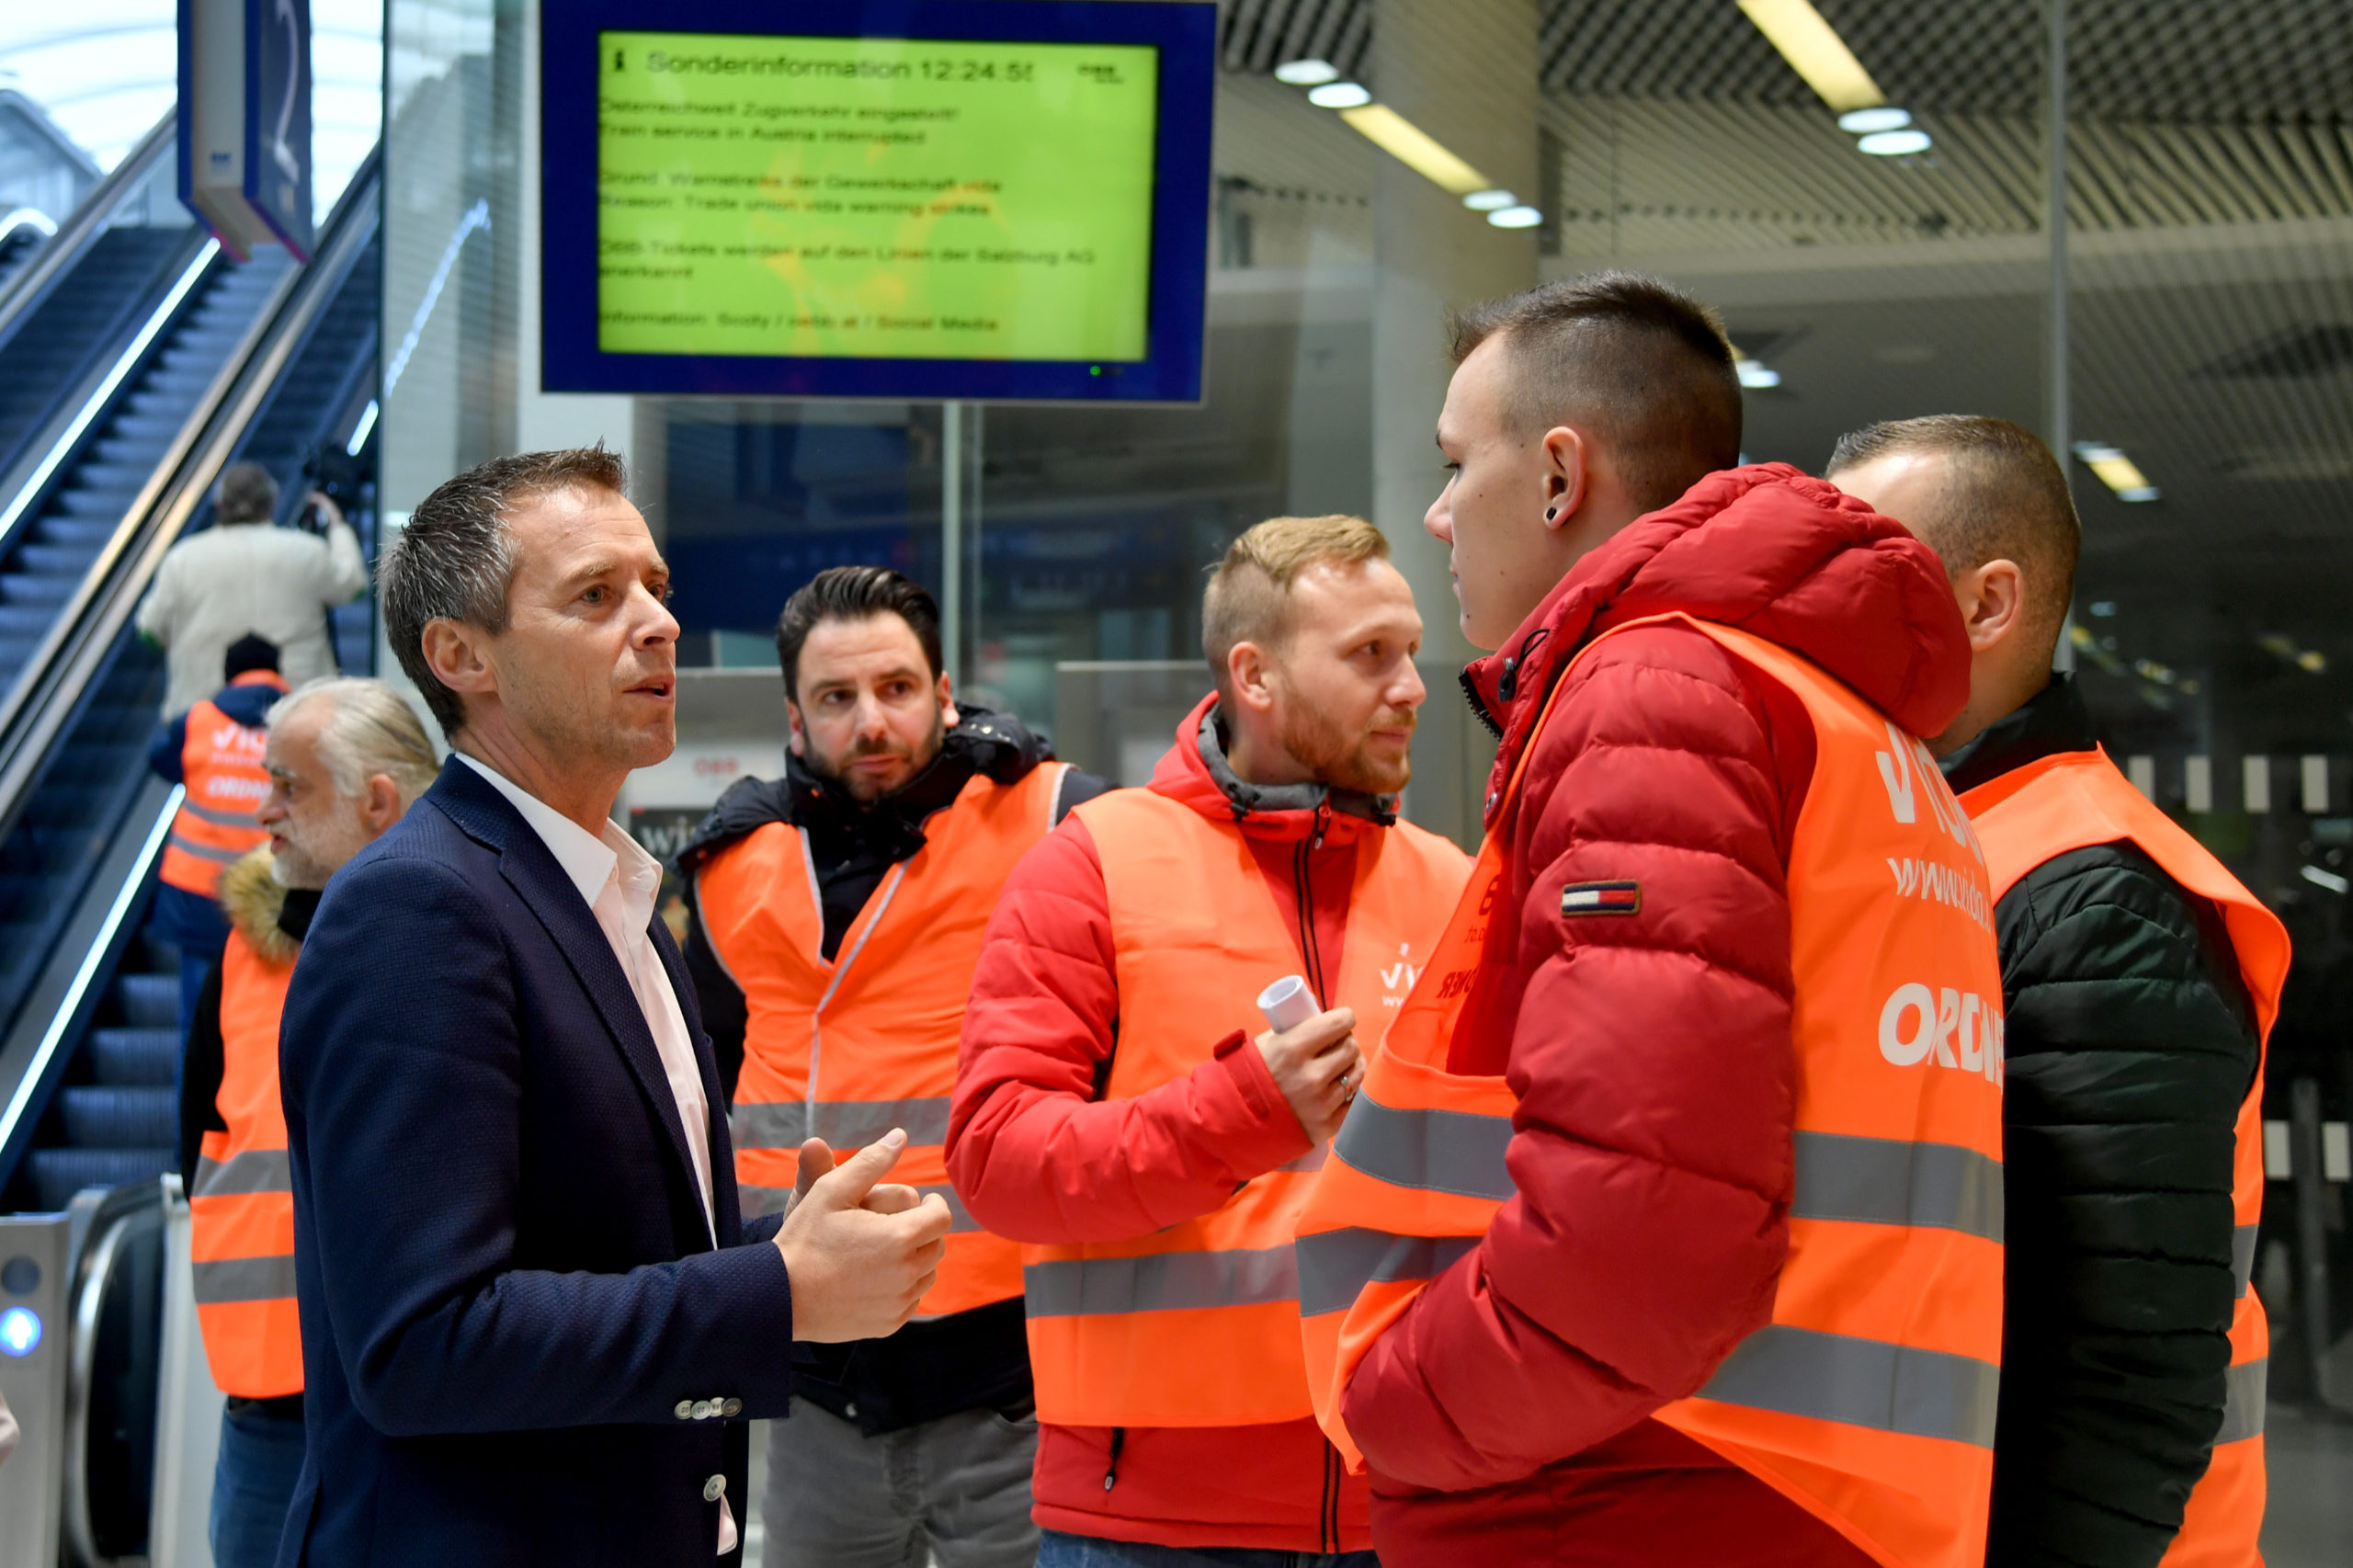 Peter Eder, Präsident der Arbeiterkammer Salzburg, beim Warnstreik bei der Bahn mit Mitgliedern der Gewerkschaft vida.